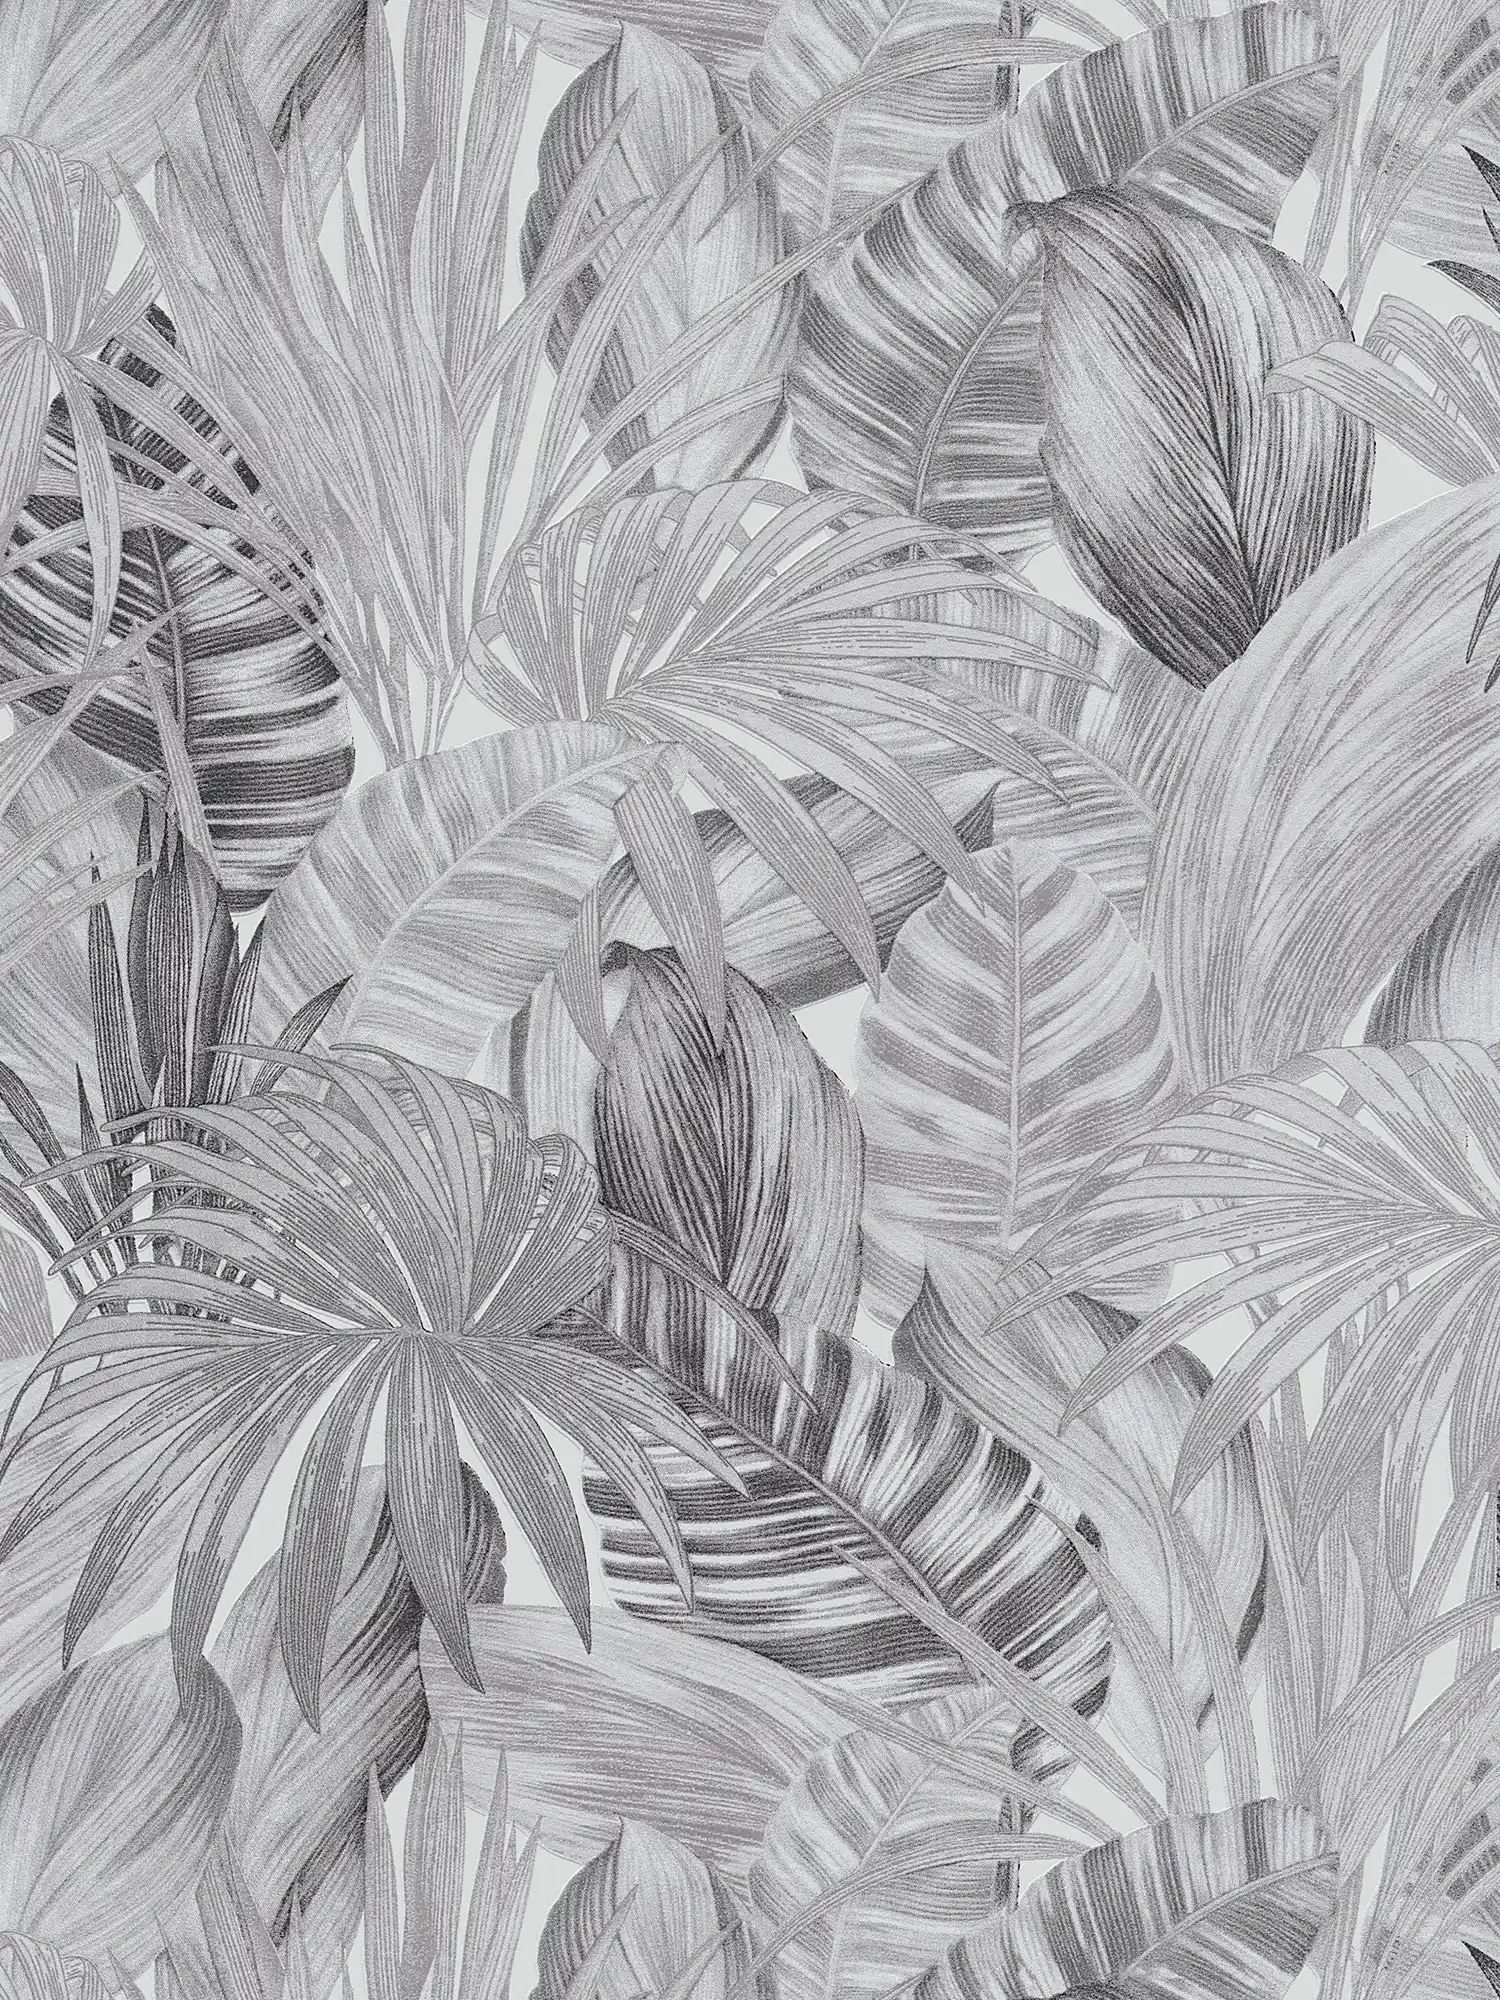 Mustertapete mit Blättermotiv im Zeichenstil – Schwarz, Weiß, Grau
